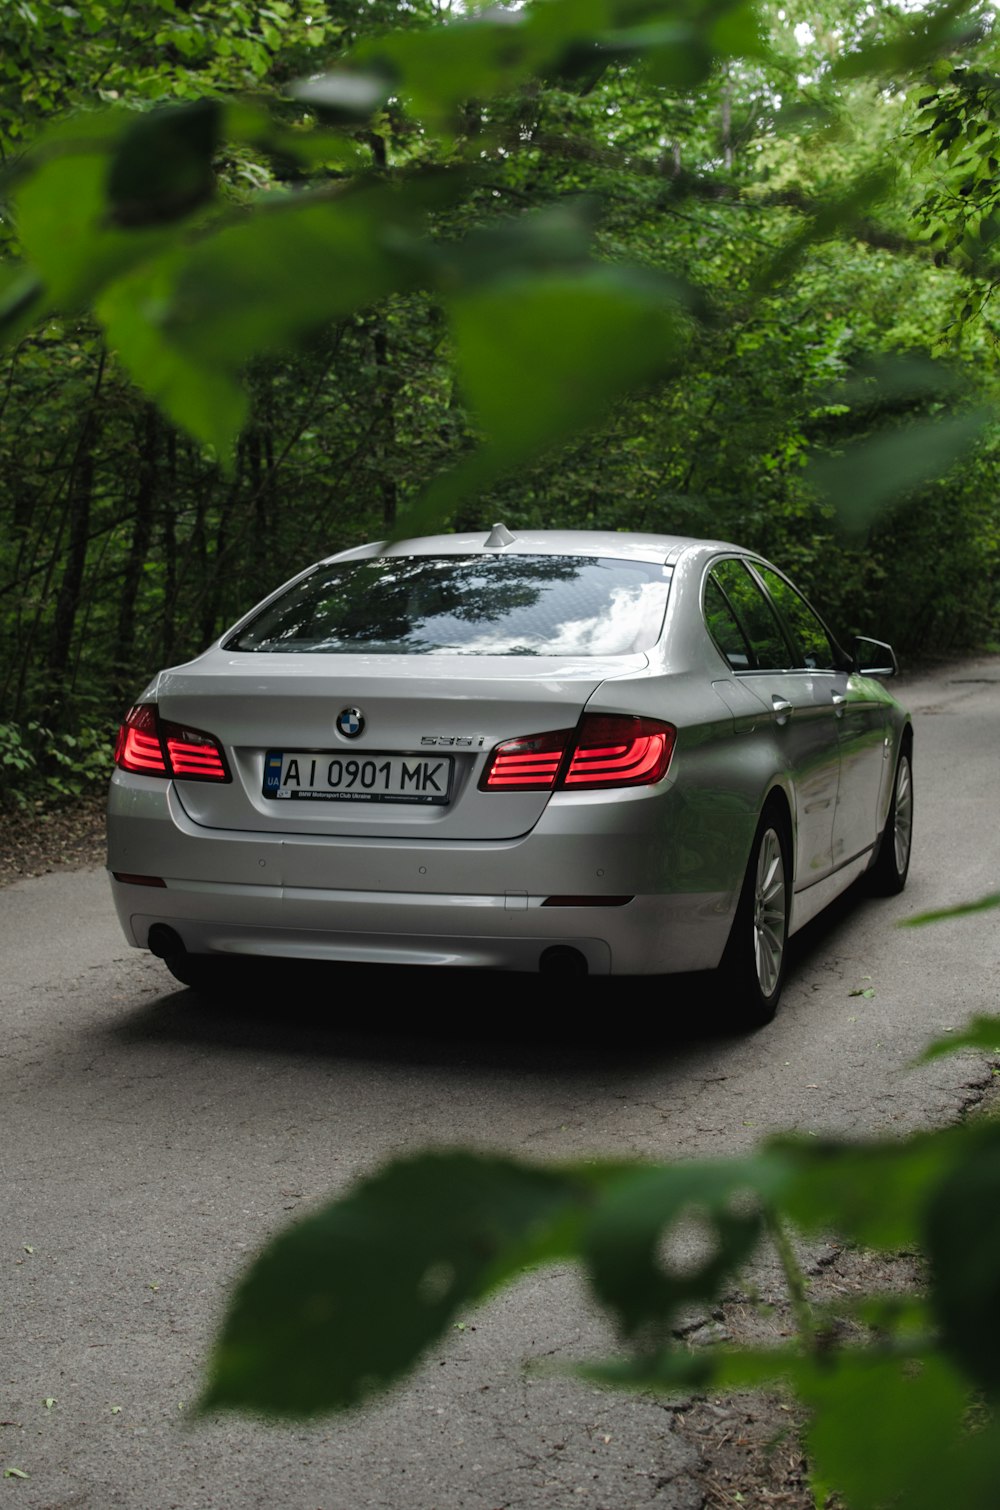 BMW M 3 coupé grise garée sur une route en béton gris pendant la journée